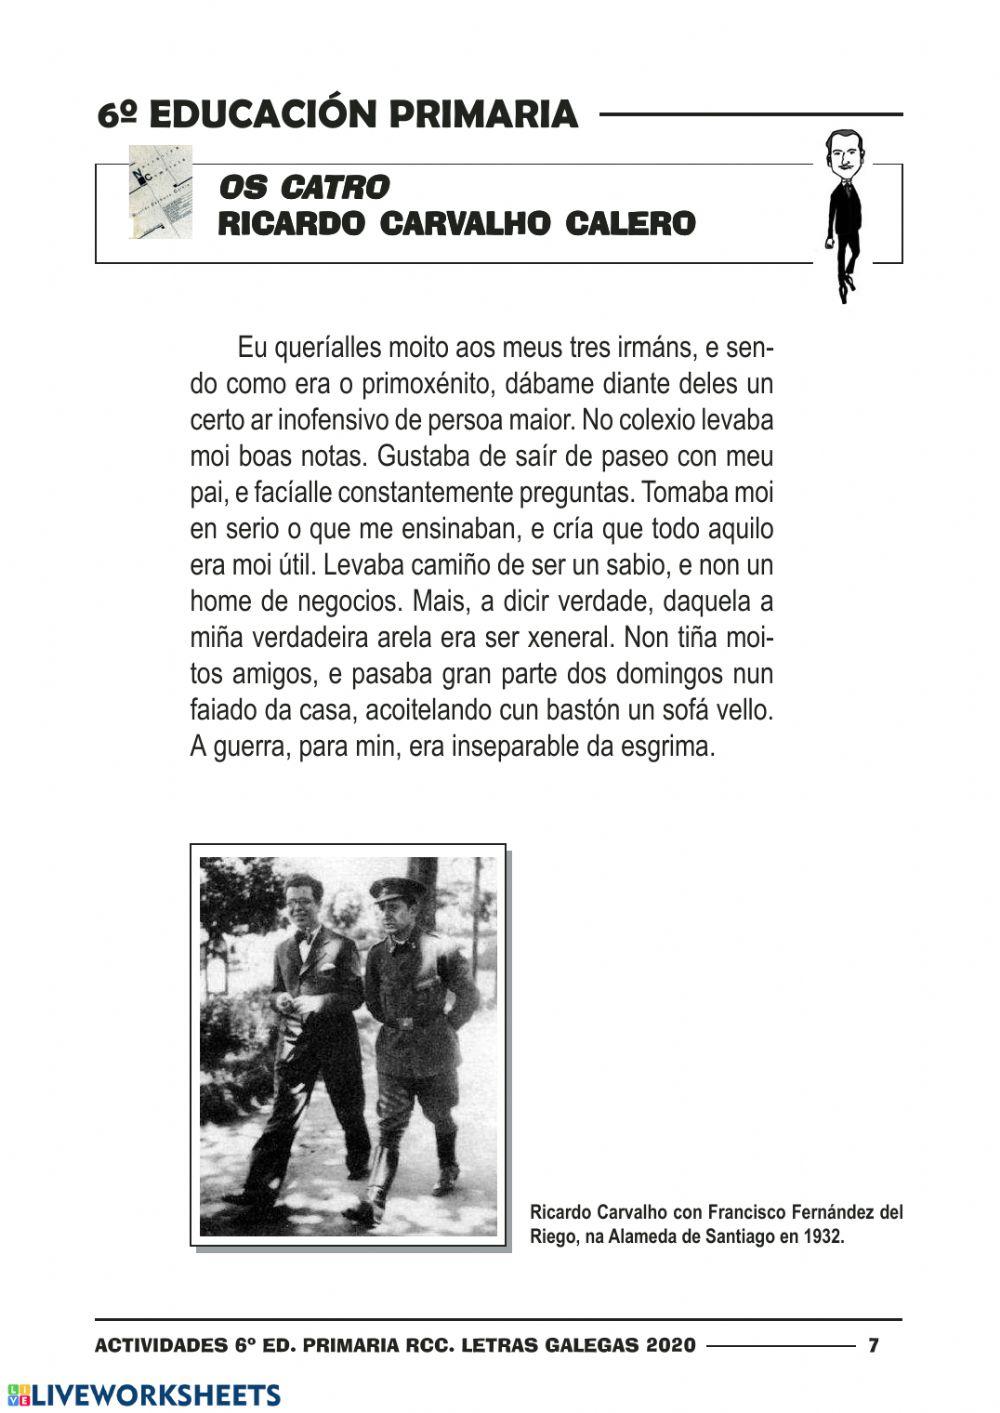 Ricardo carvalho calero